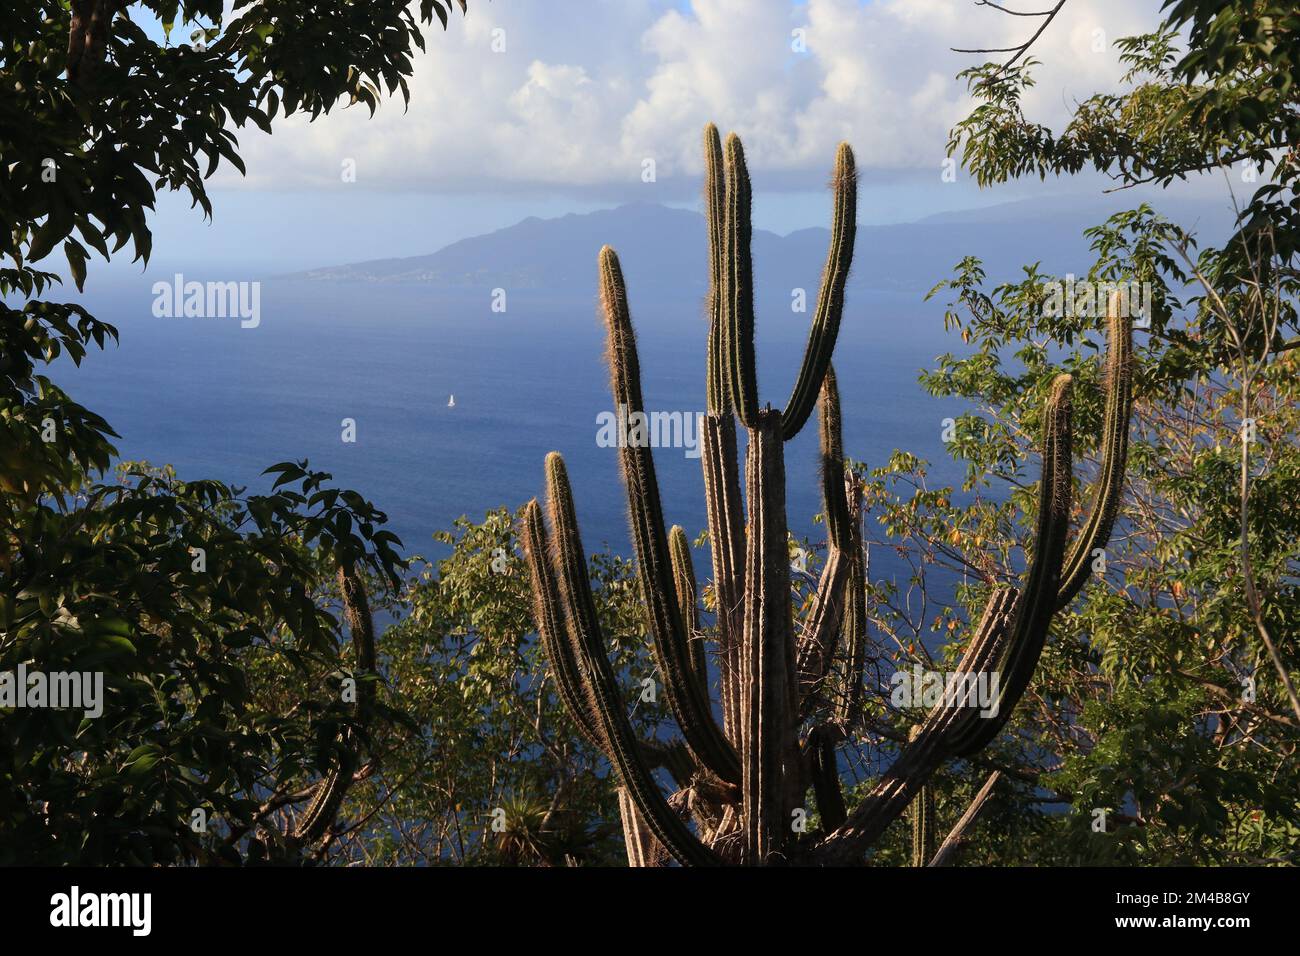 Guadeloupe - Insellandschaft von Les Saintes mit einem Kaktus. Blick auf die Insel Terre de Haut in Richtung Basse Terre. Stockfoto